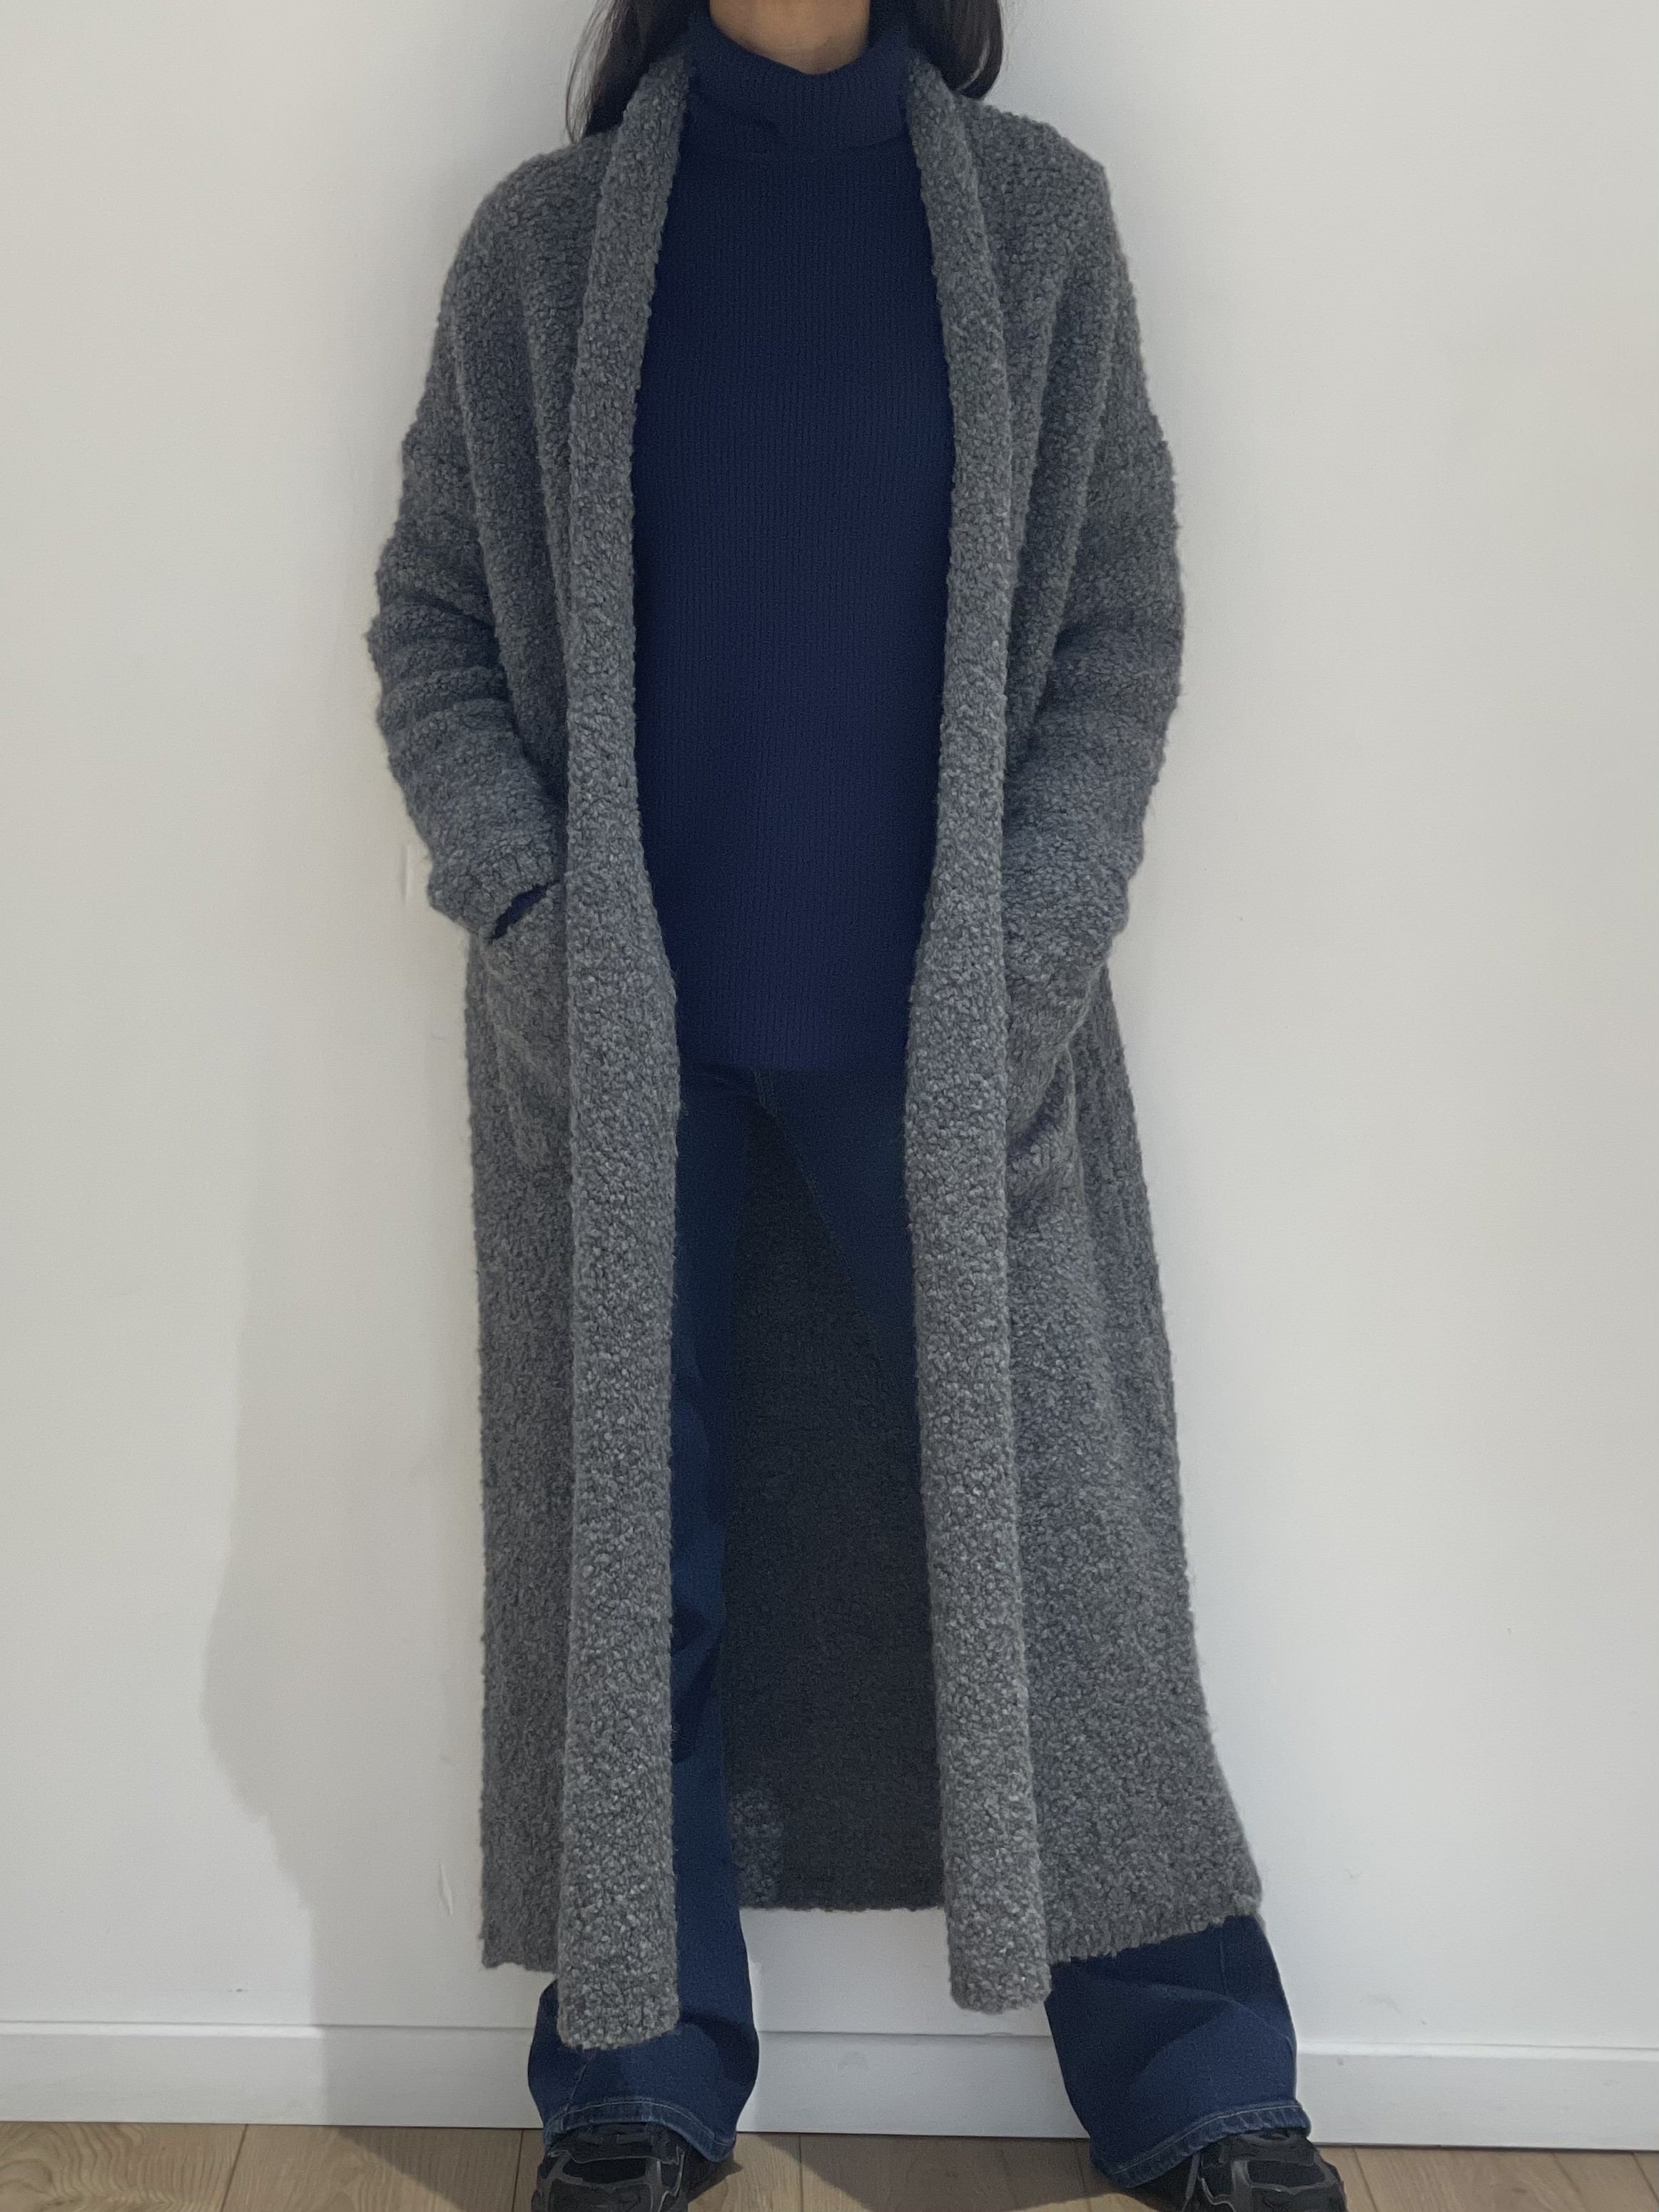 Style urbain avec manteau long gris pour femme